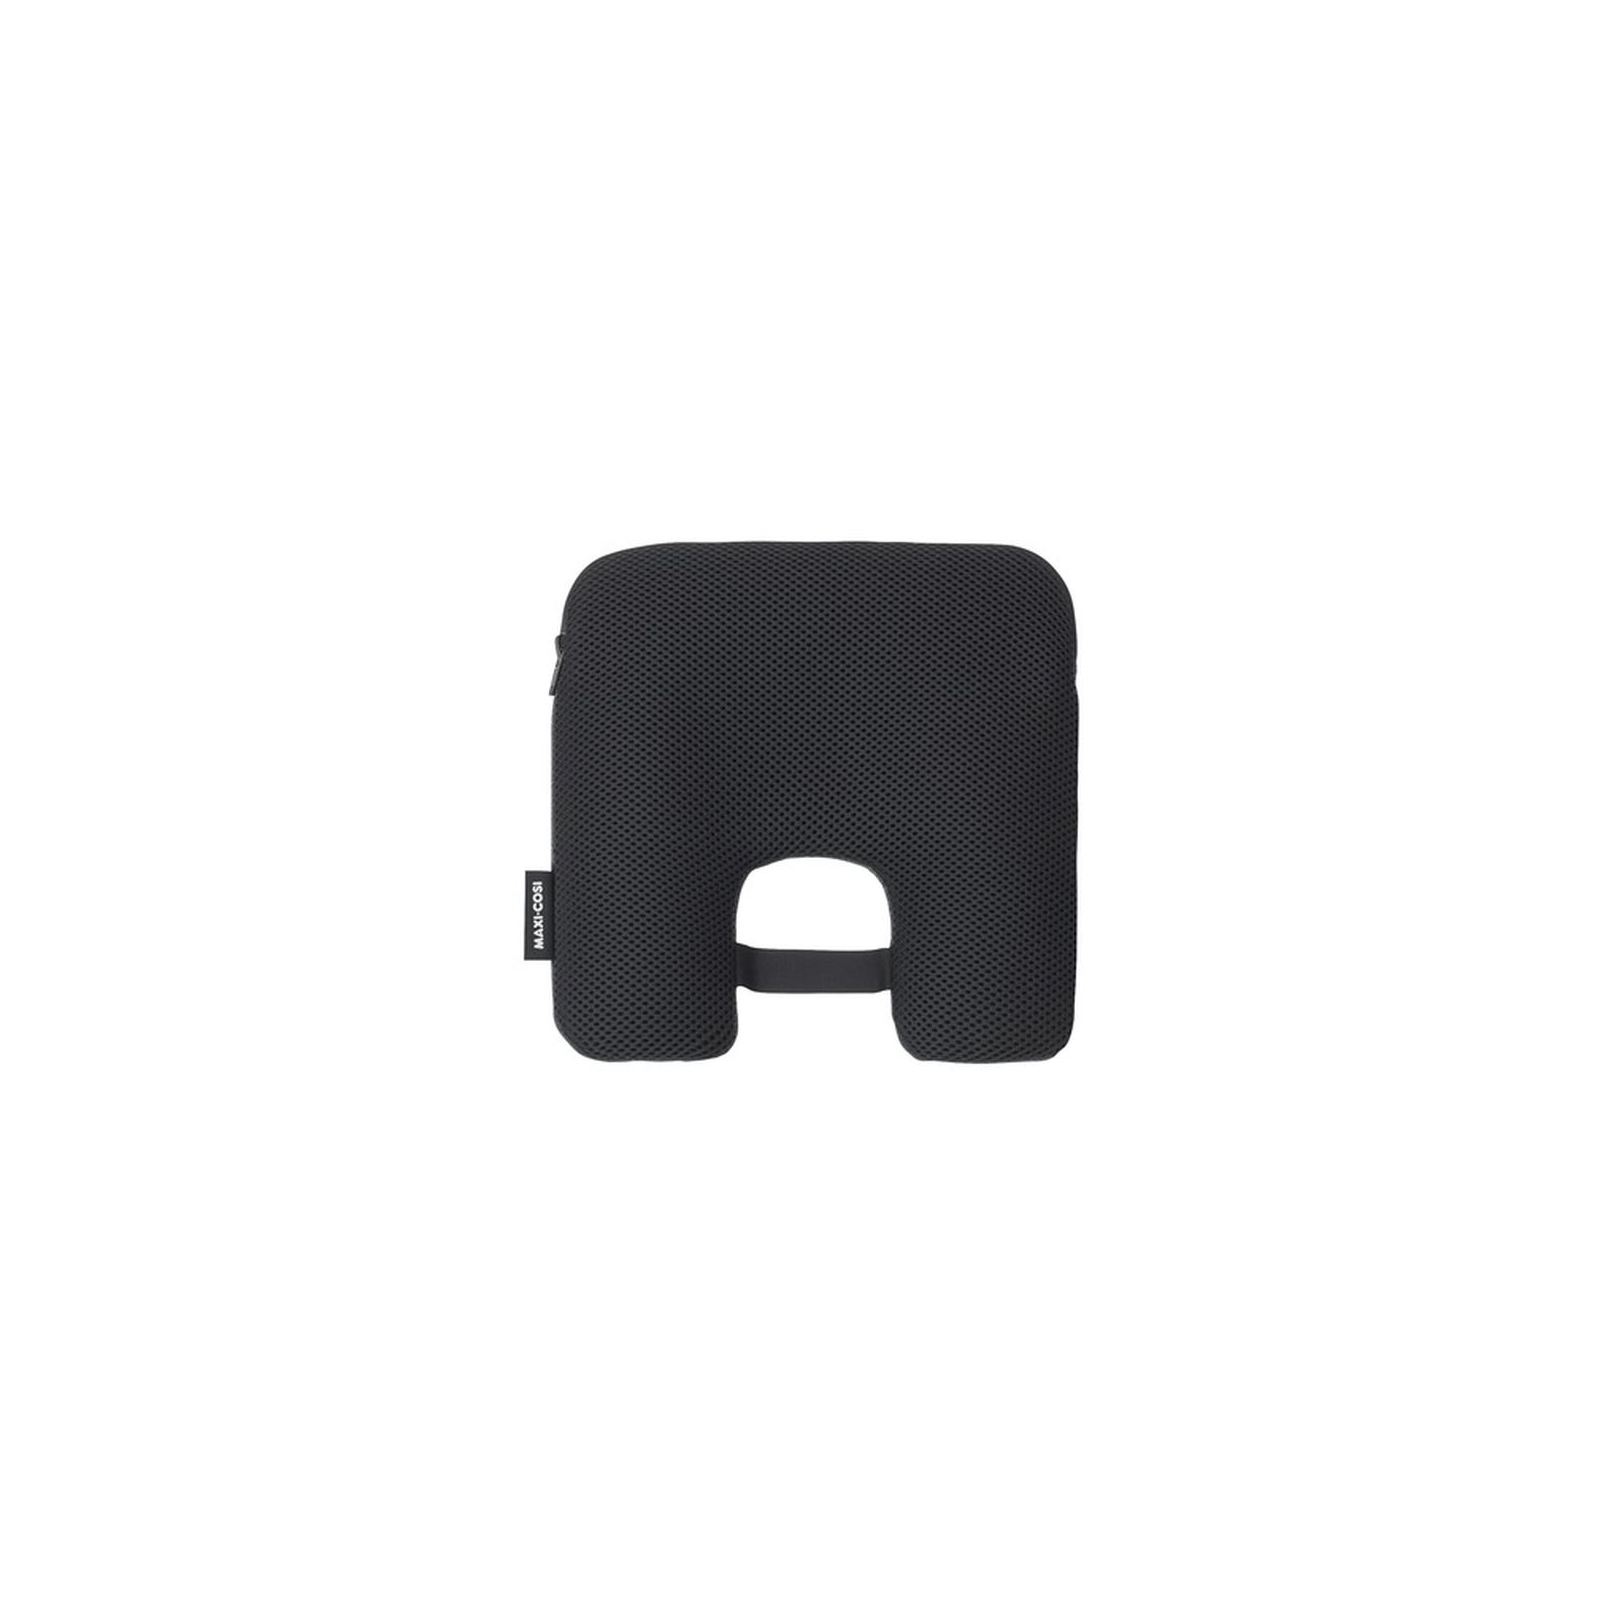 Аксессуар для автокресла Maxi-Cosi е-Safety Black смарт-подушка с датчиком (8494057111)